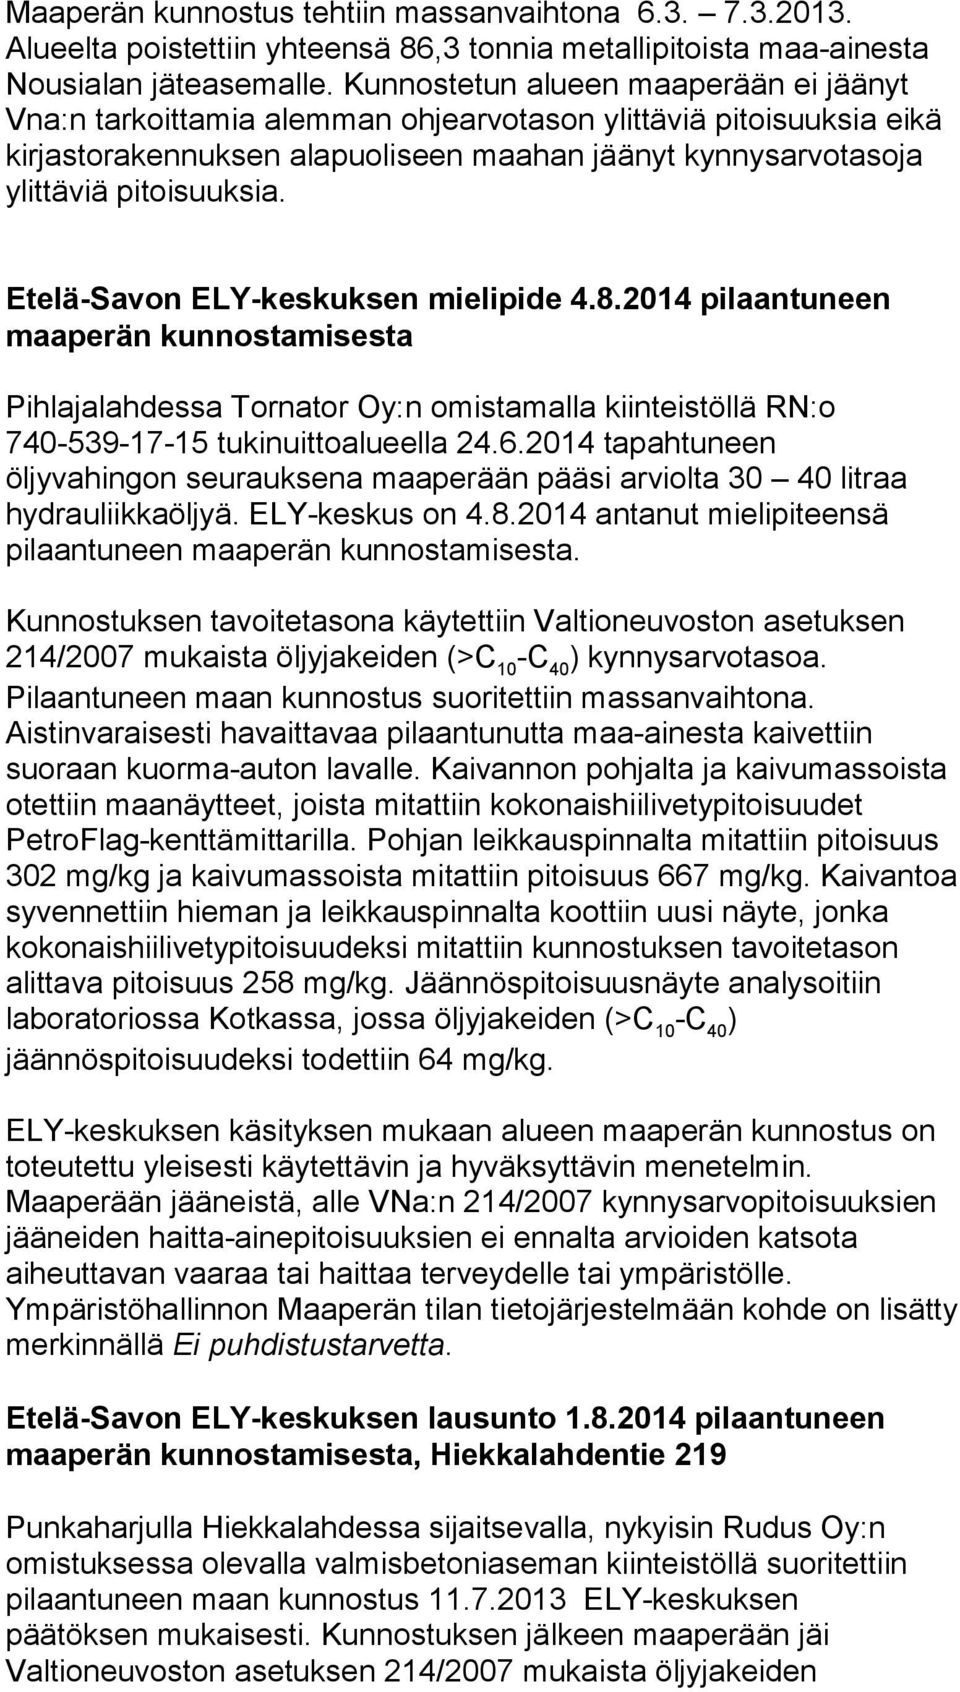 Etelä-Savon ELY-keskuksen mielipide 4.8.2014 pilaantuneen maaperän kunnostamisesta Pihlajalahdessa Tornator Oy:n omistamalla kiinteistöllä RN:o 740-539-17-15 tukinuittoalueella 24.6.